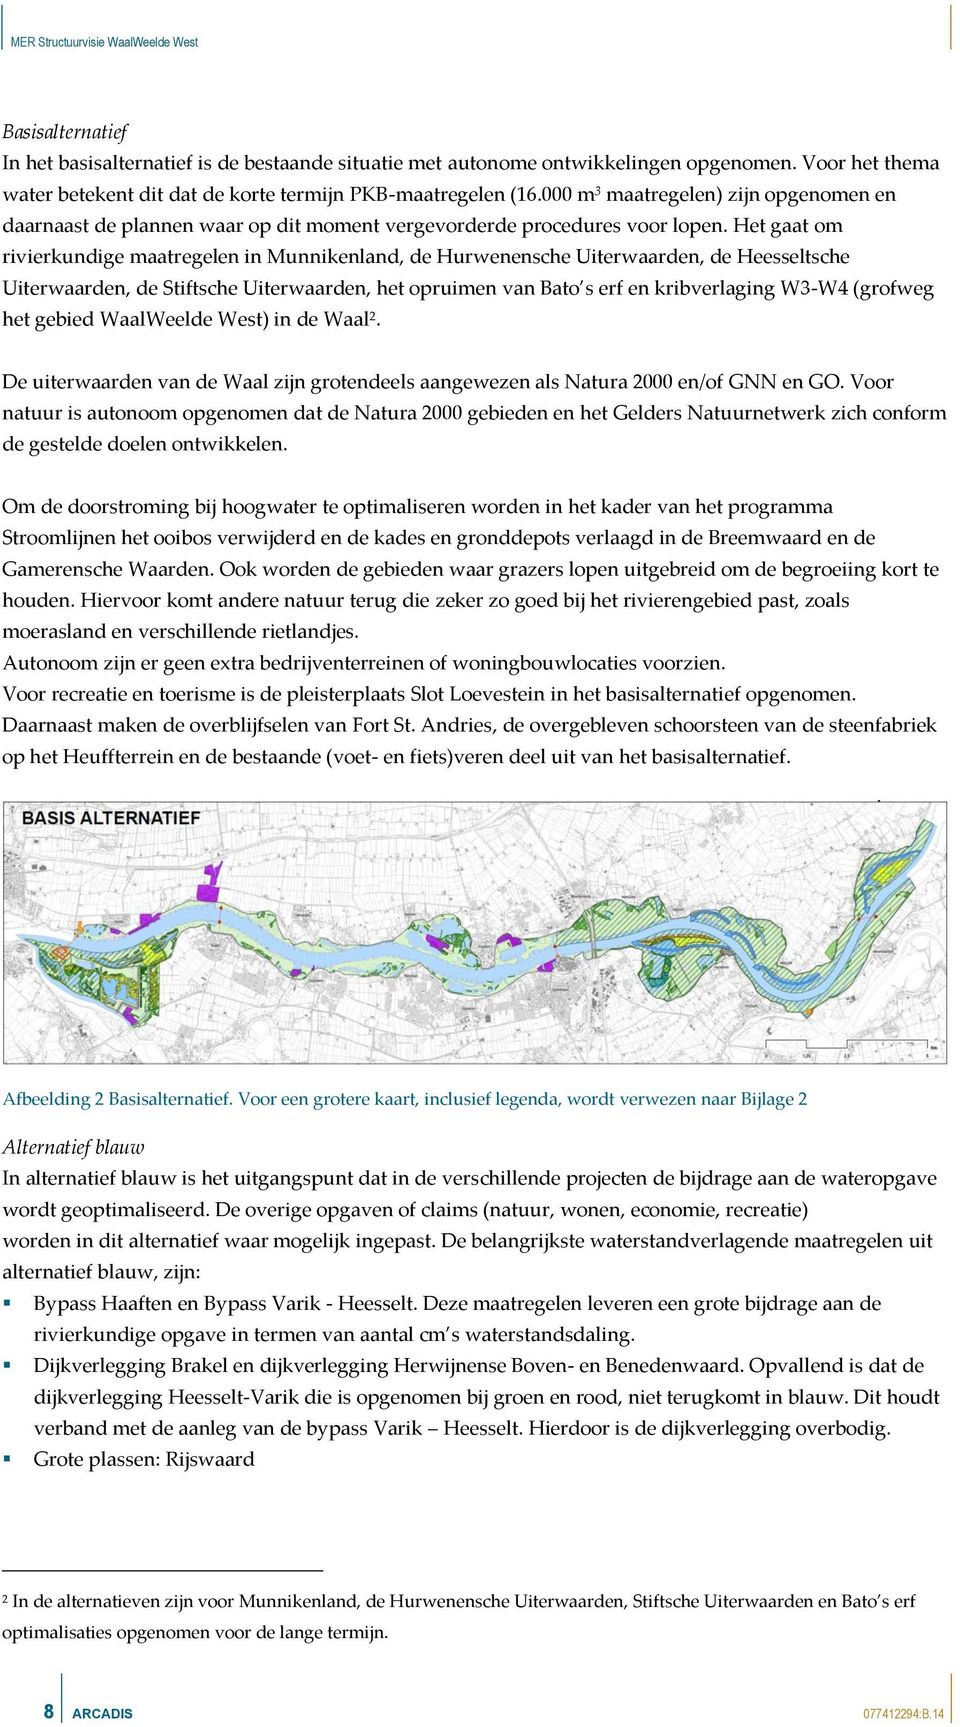 Het gaat om rivierkundige maatregelen in Munnikenland, de Hurwenensche Uiterwaarden, de Heesseltsche Uiterwaarden, de Stiftsche Uiterwaarden, het opruimen van Bato s erf en kribverlaging W3W4